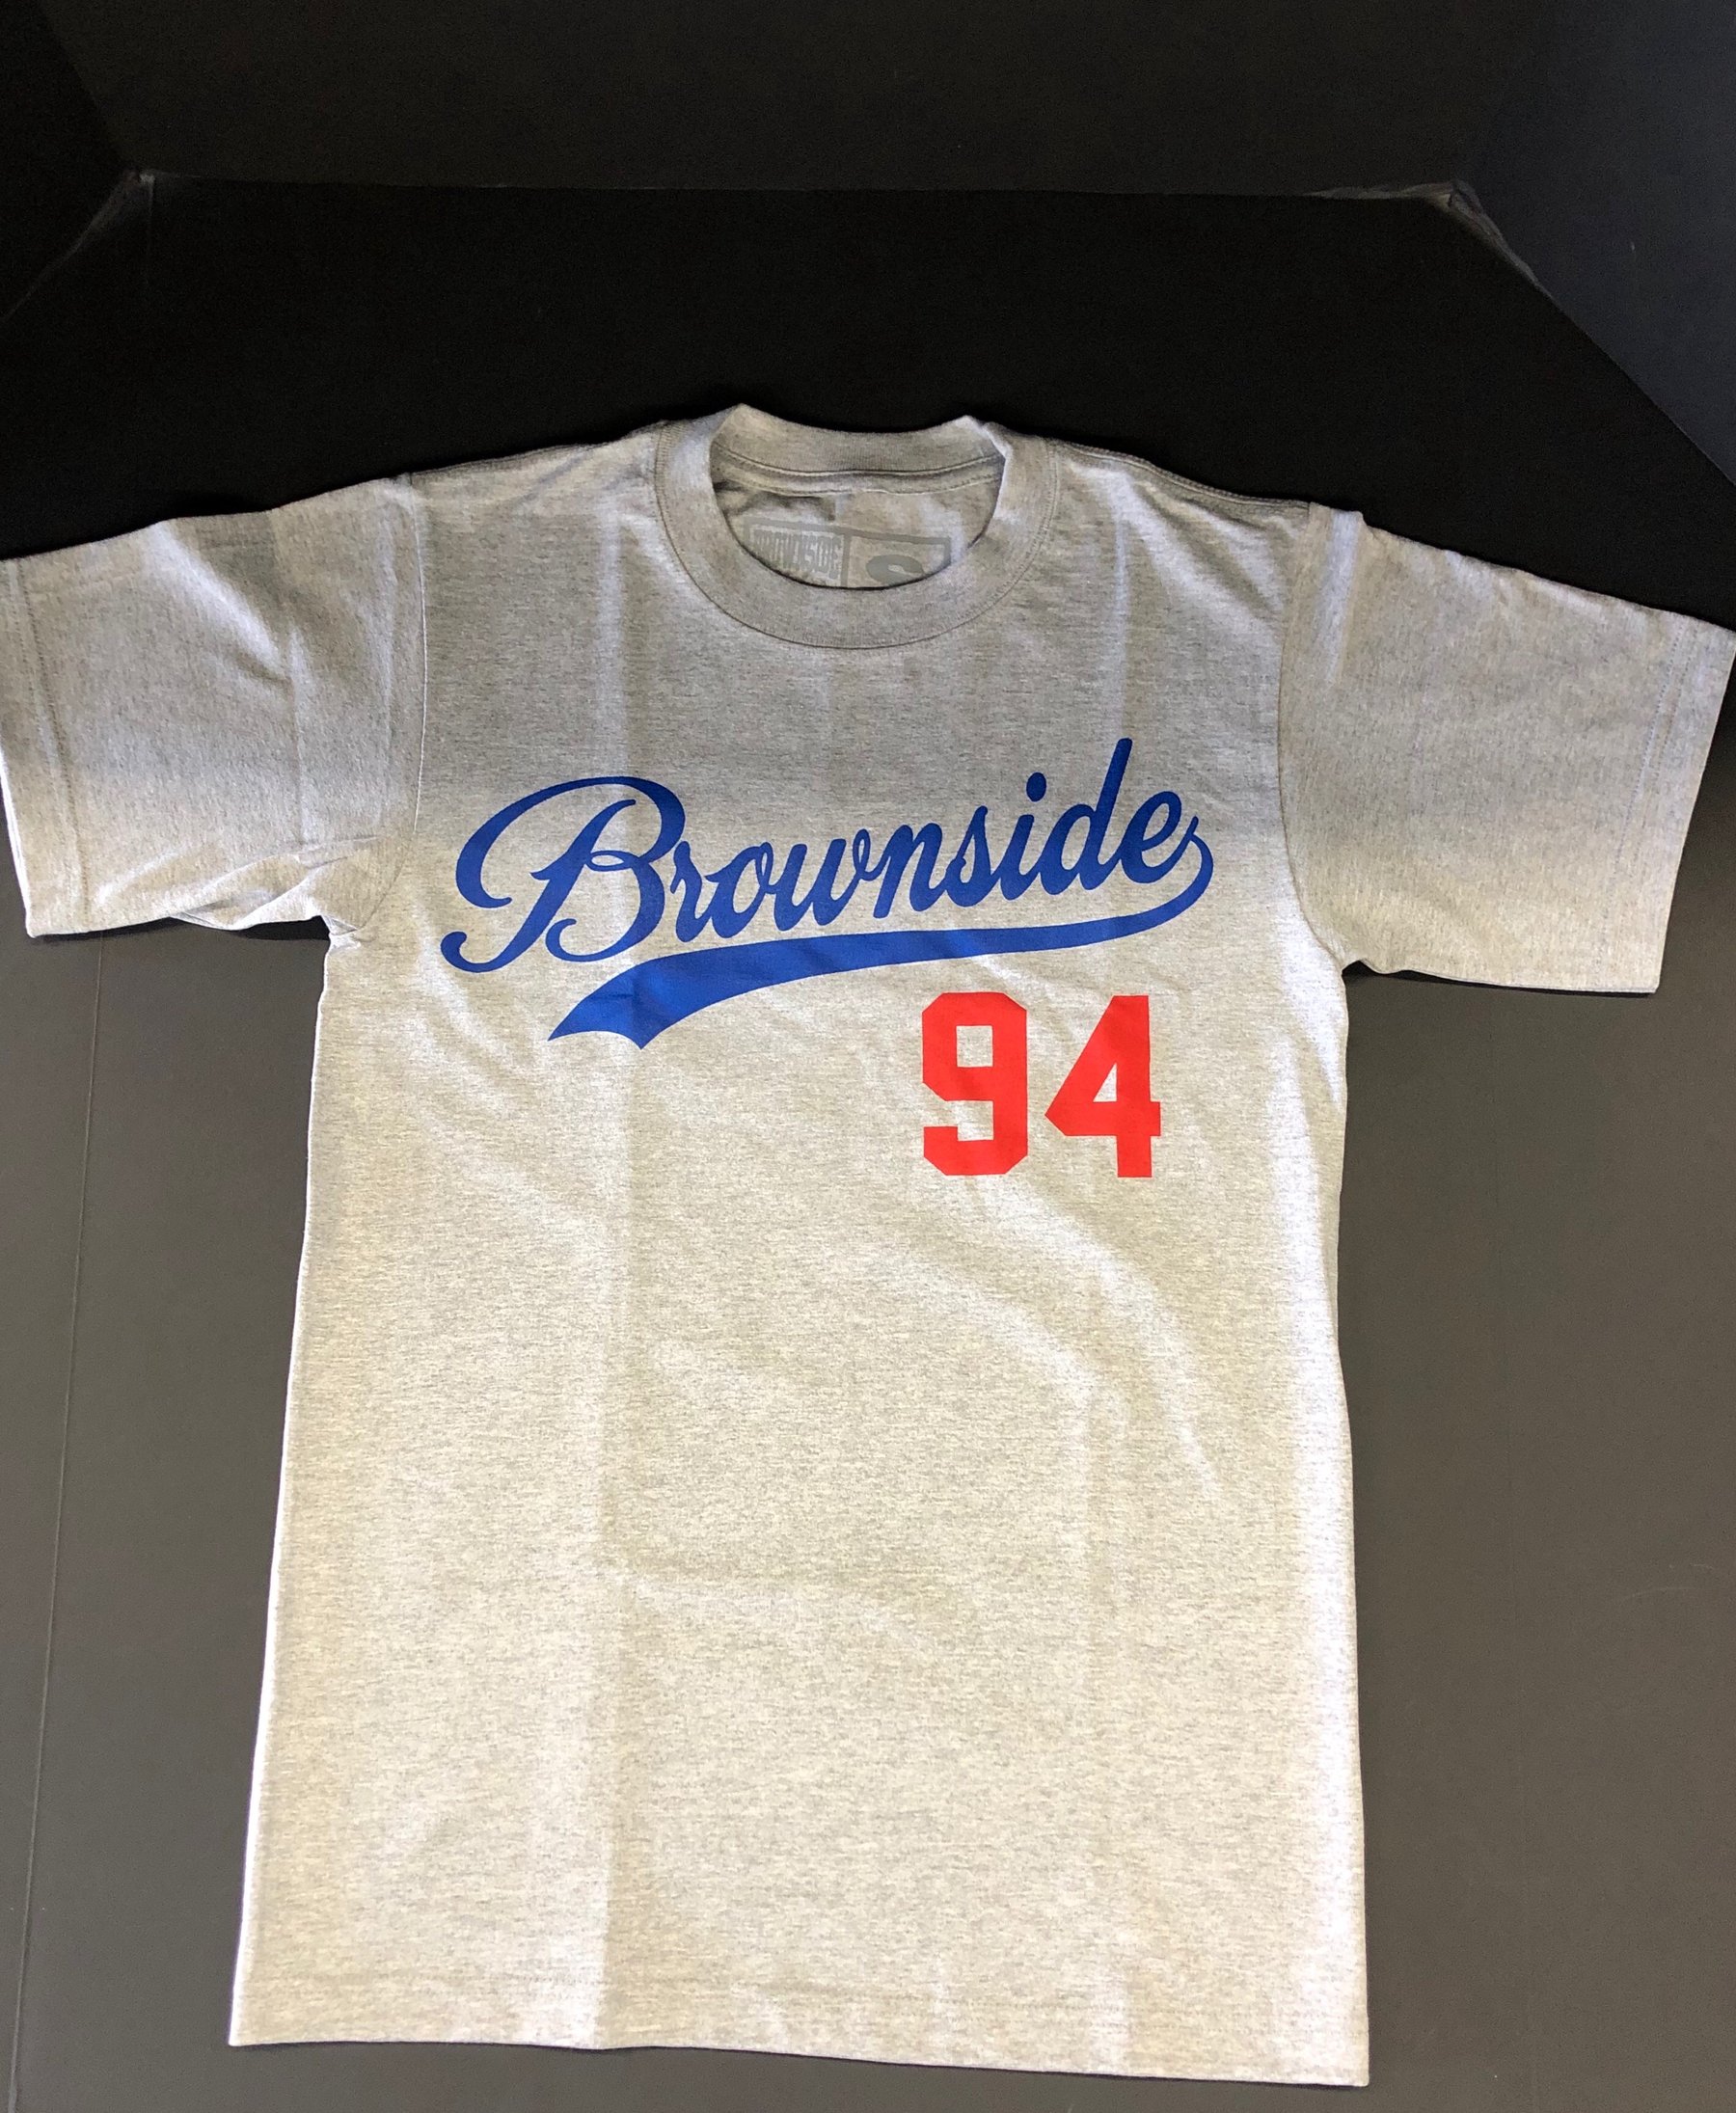 Brownside — BROWNSIDE Men Baseball tee